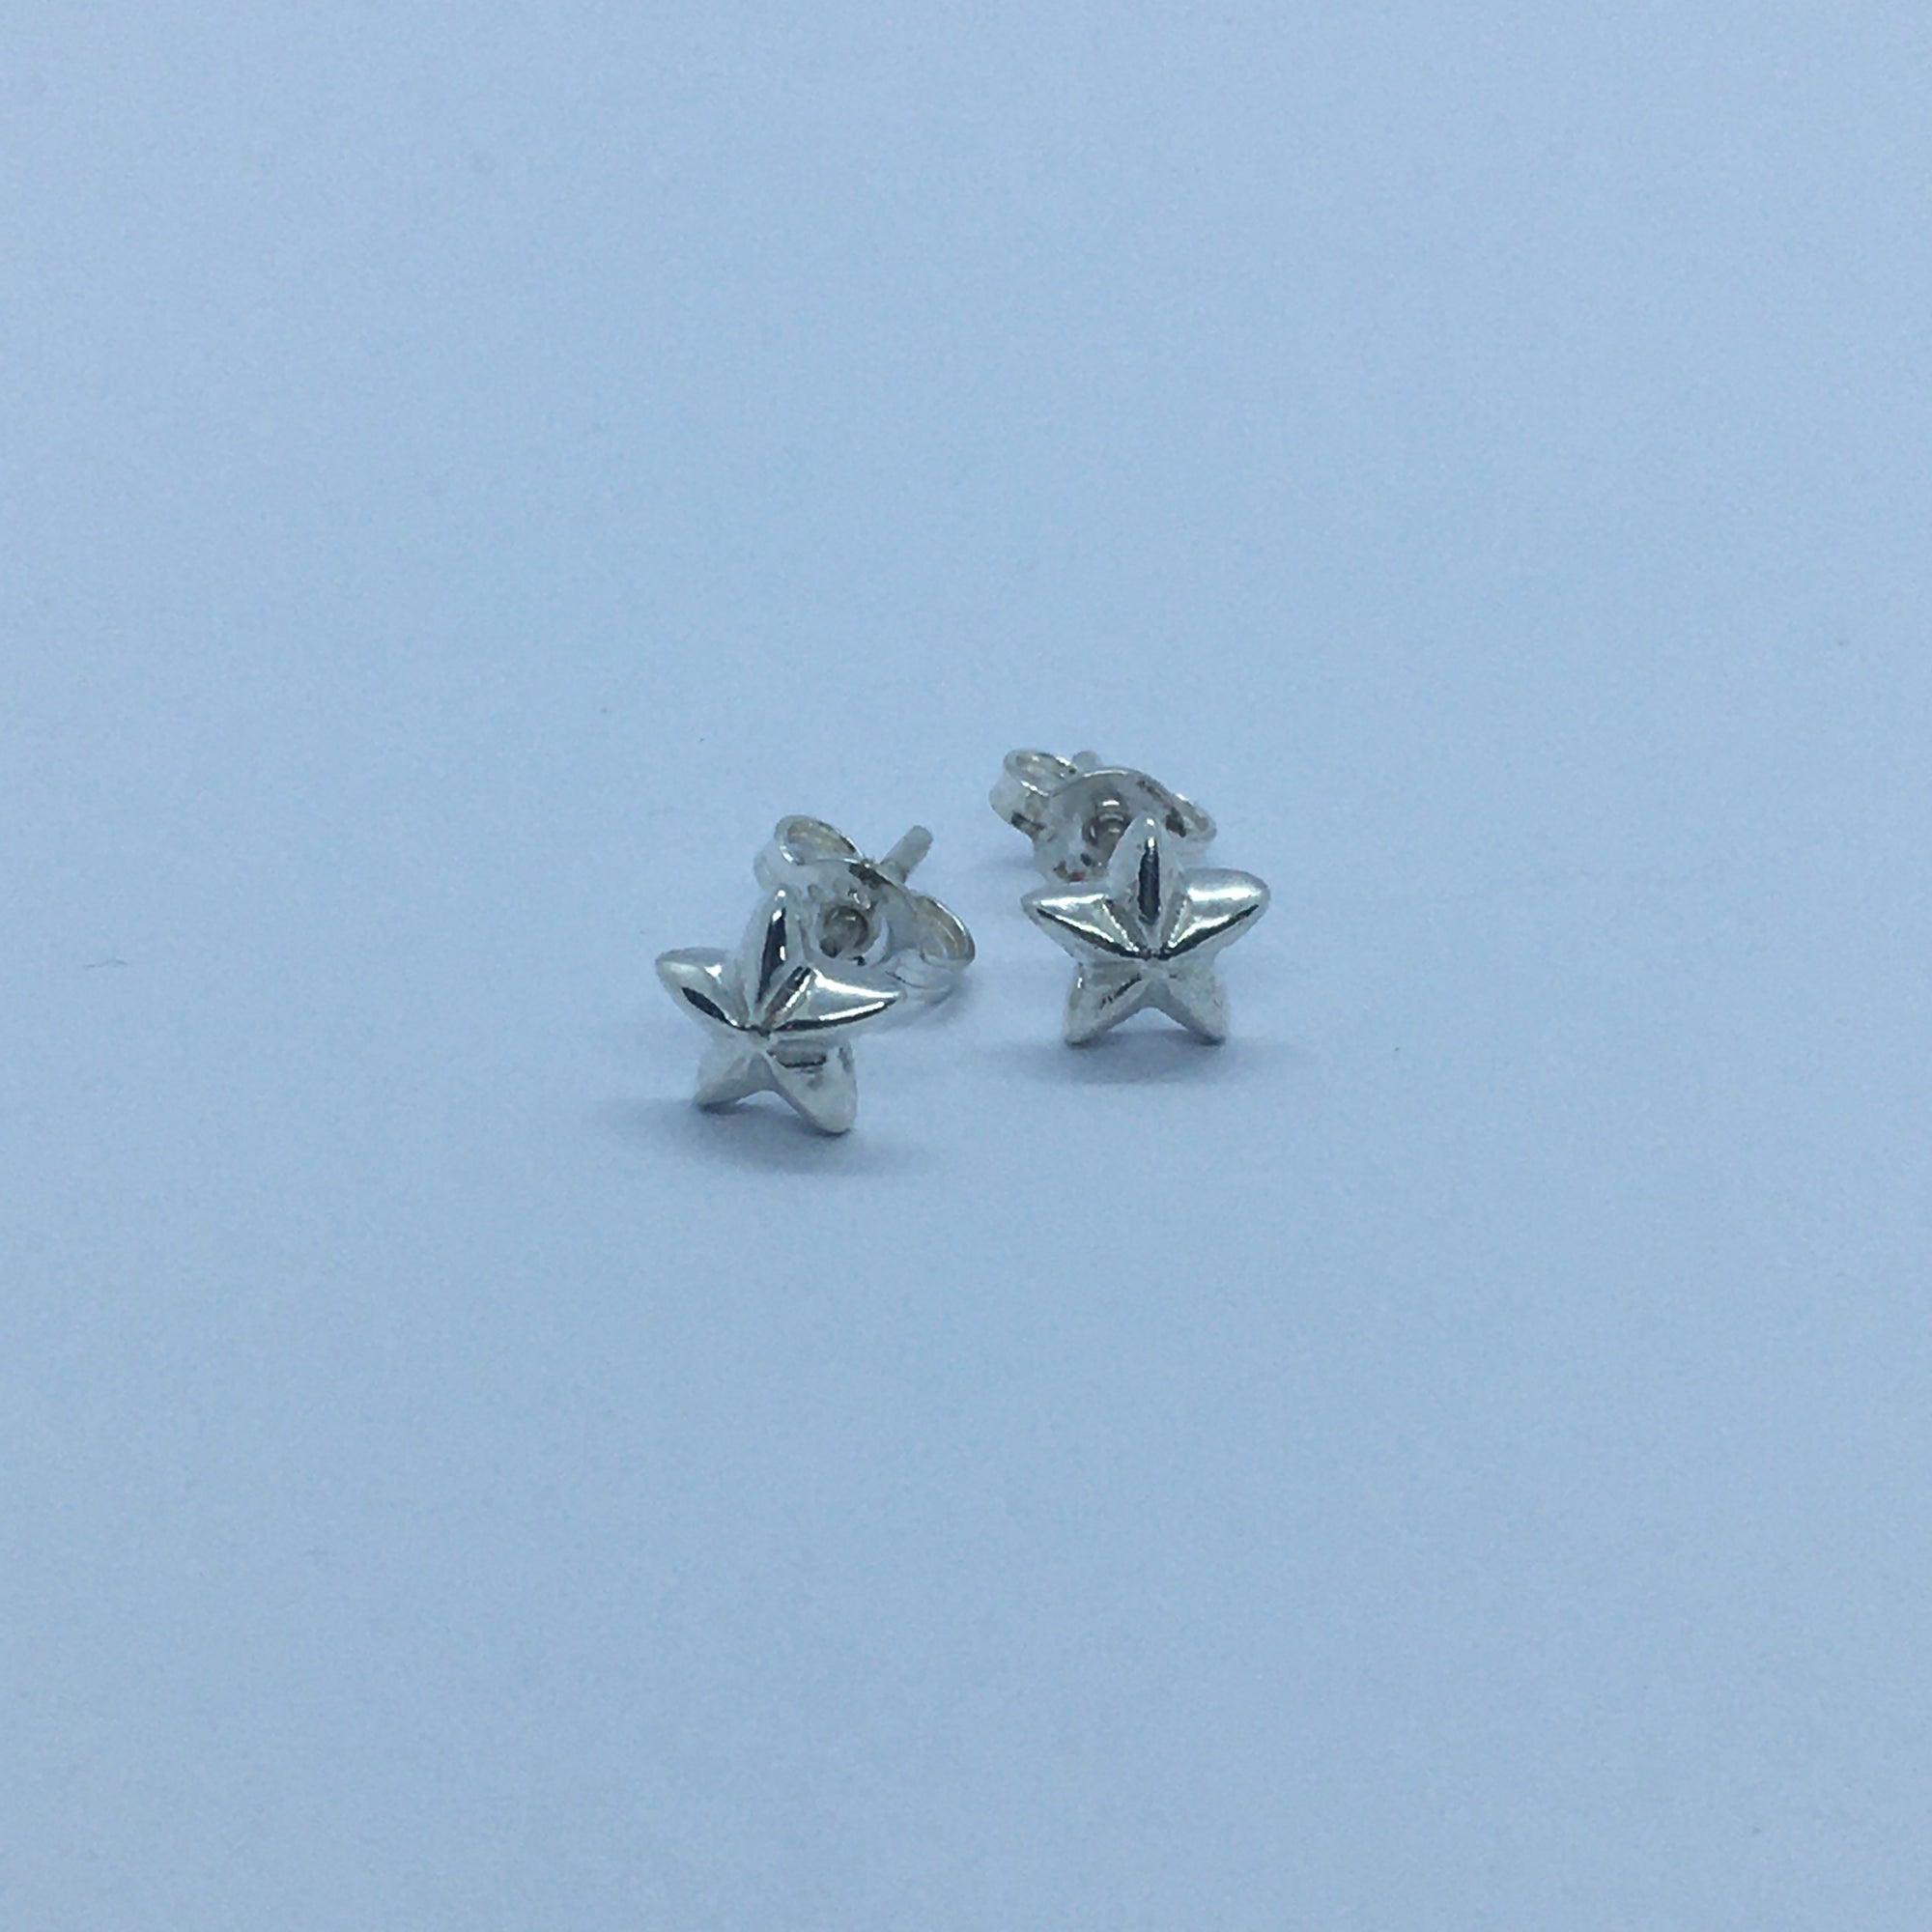 Star Stud Earrings - Silver